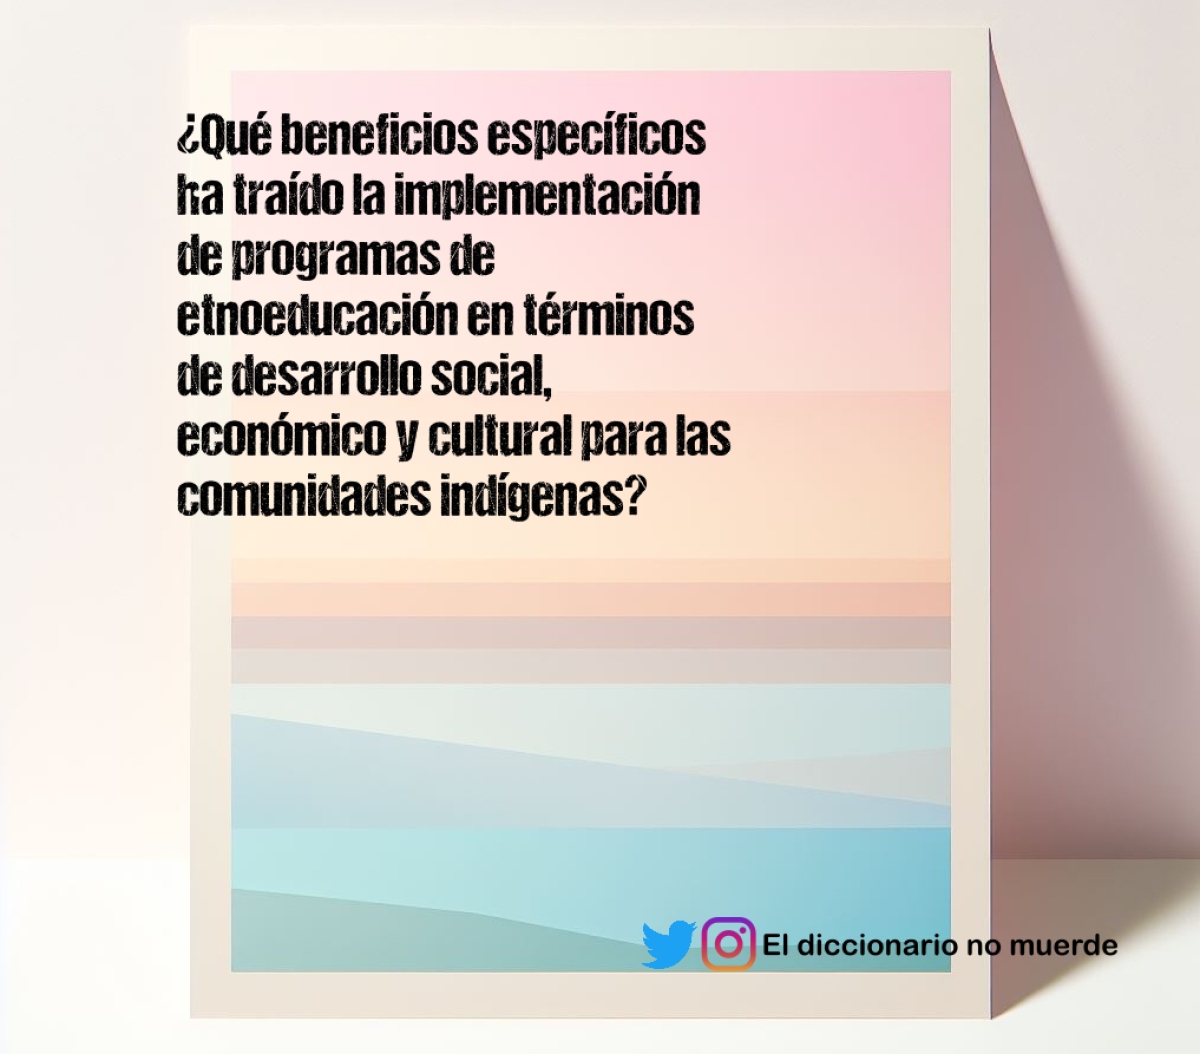 ¿Qué beneficios específicos ha traído la implementación de programas de etnoeducación en términos de desarrollo social, económico y cultural para las comunidades indígenas?